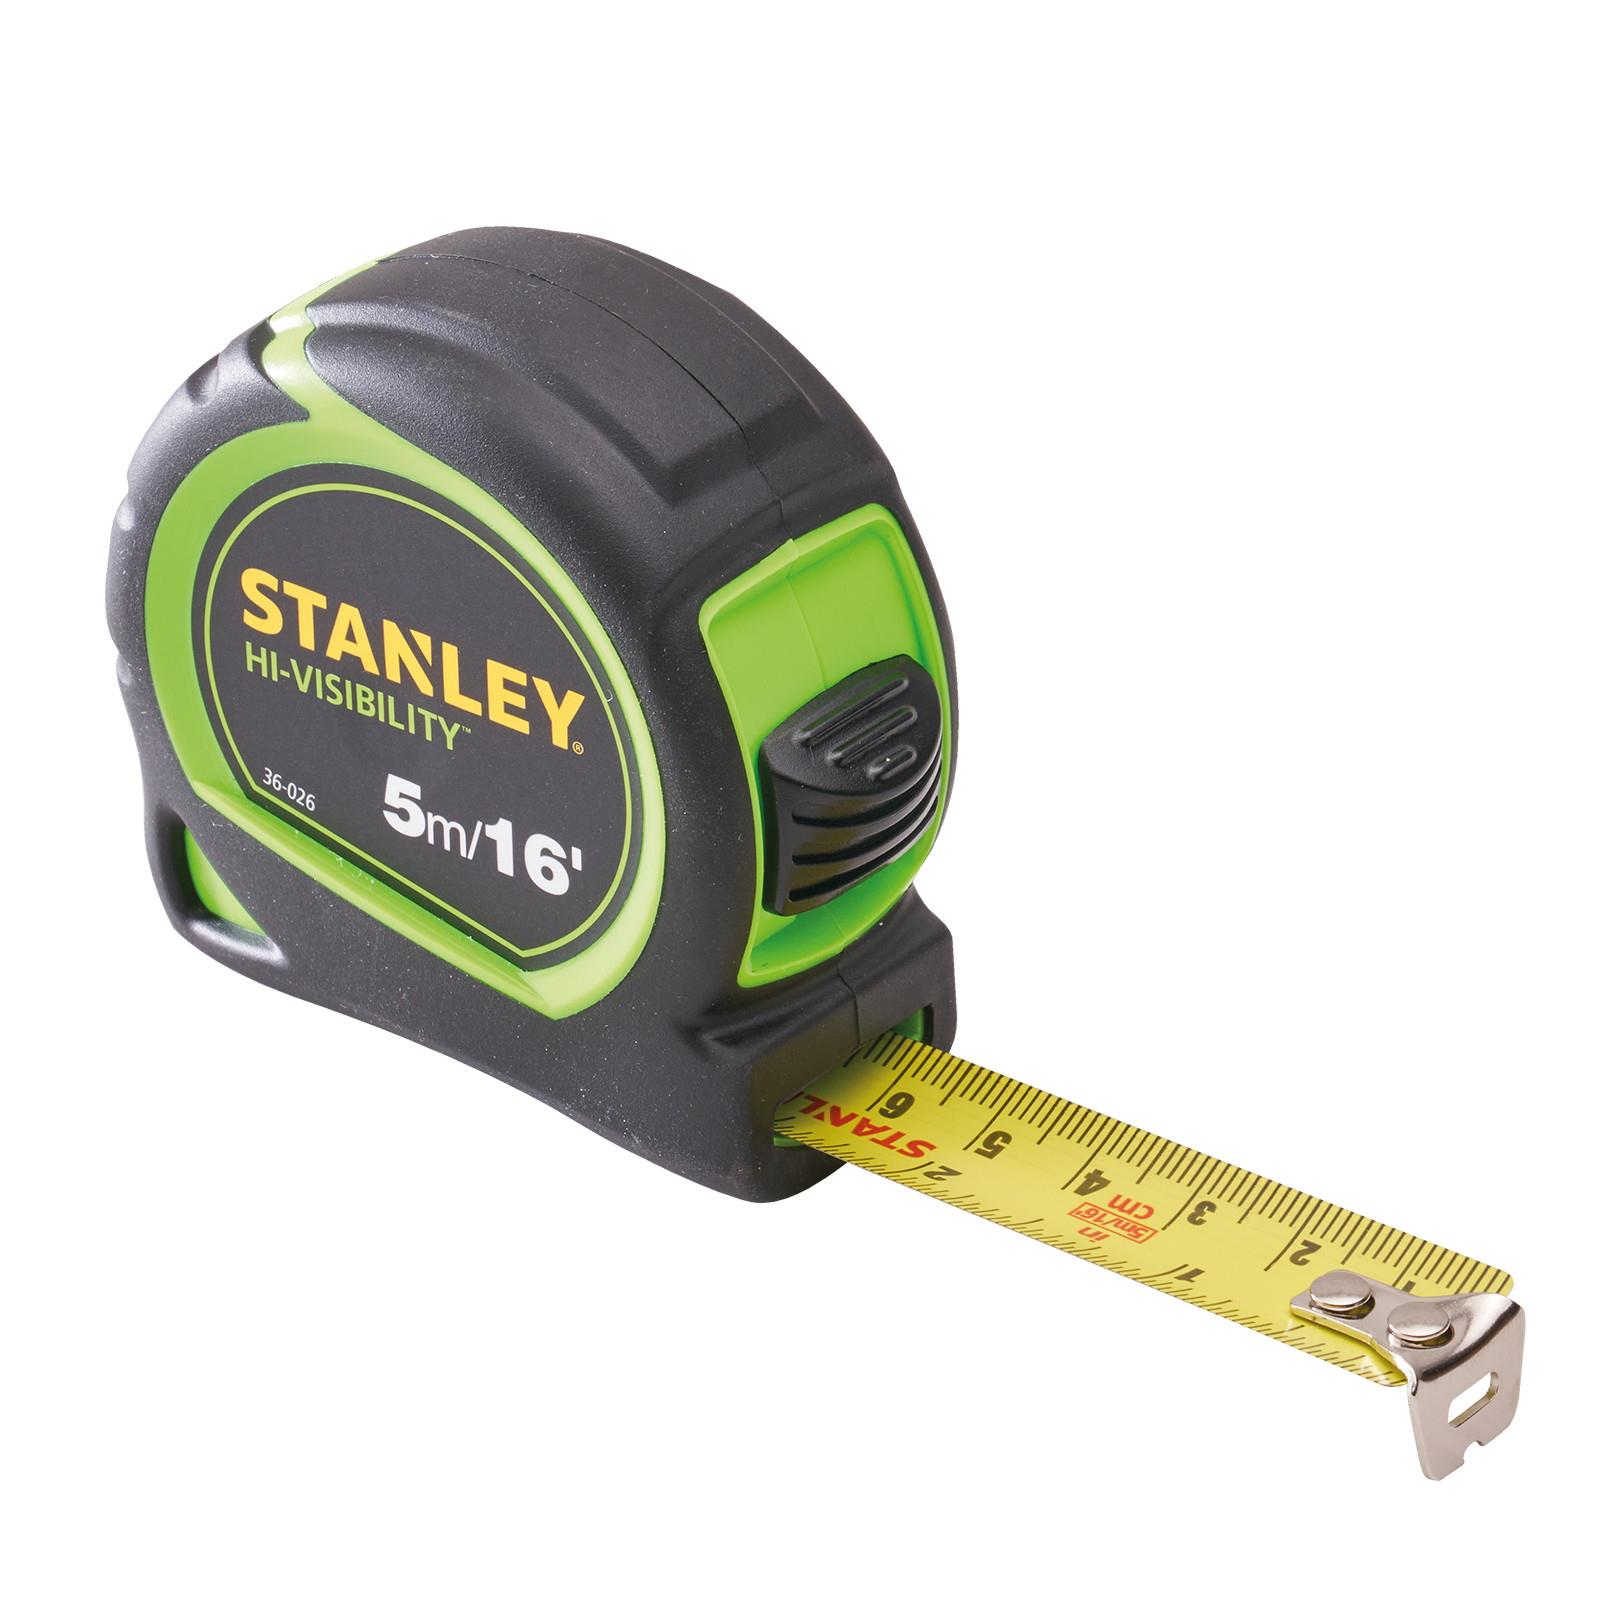 Stanley 1-30-602HG Hi-Vis Tylon Tape; 5m/16ft (Width 19mm)